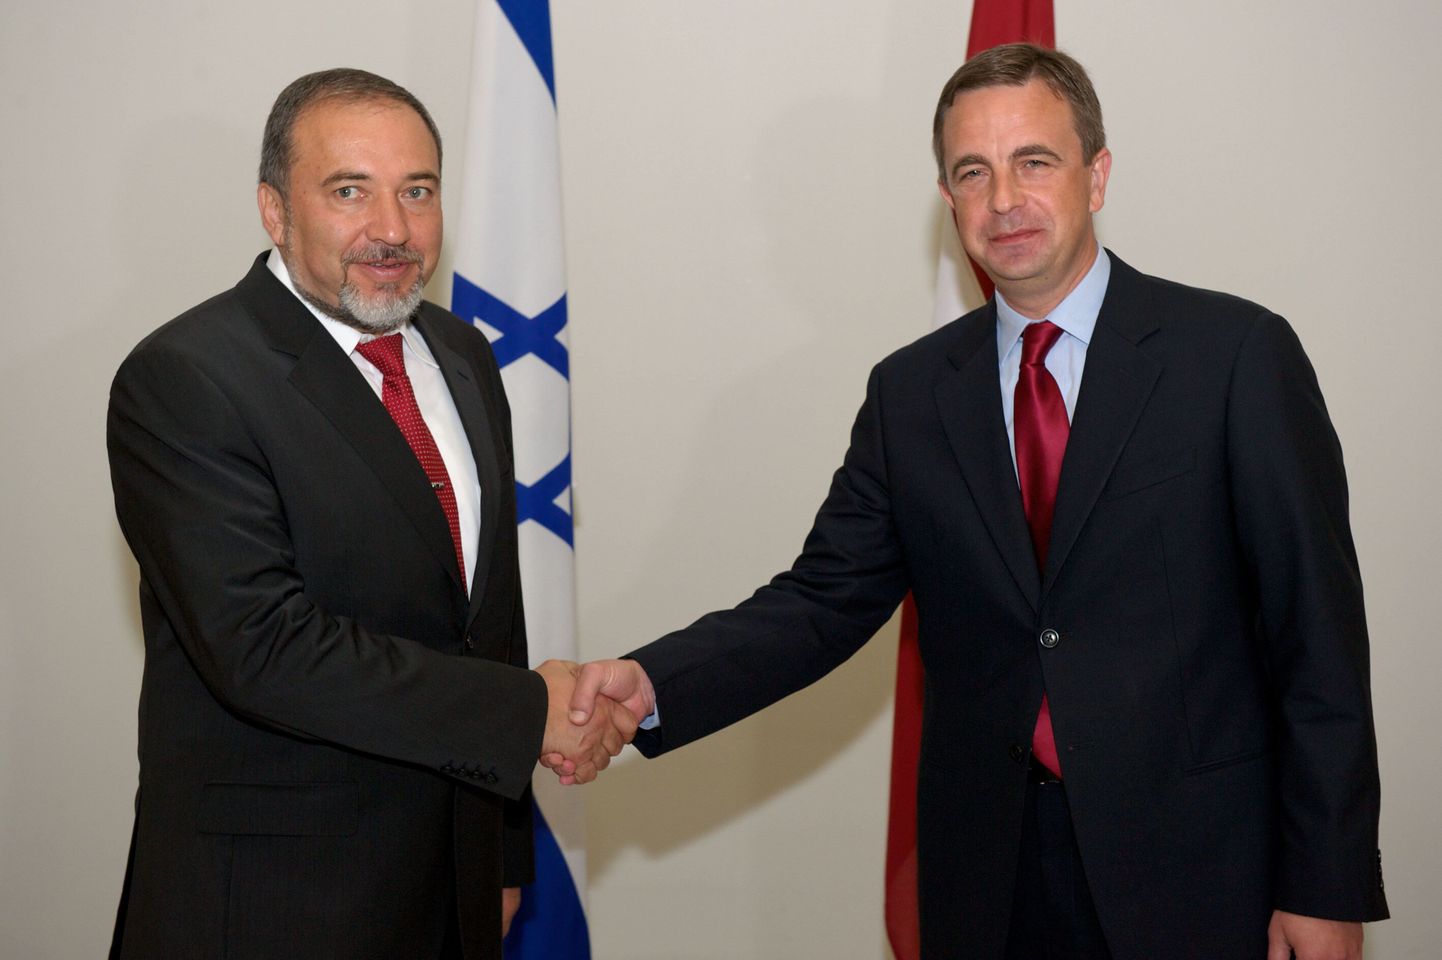 Läti välisminister Aivis Ronis (paremal) ja tema Iisraeli kolleeg Avigdor Lieberman.